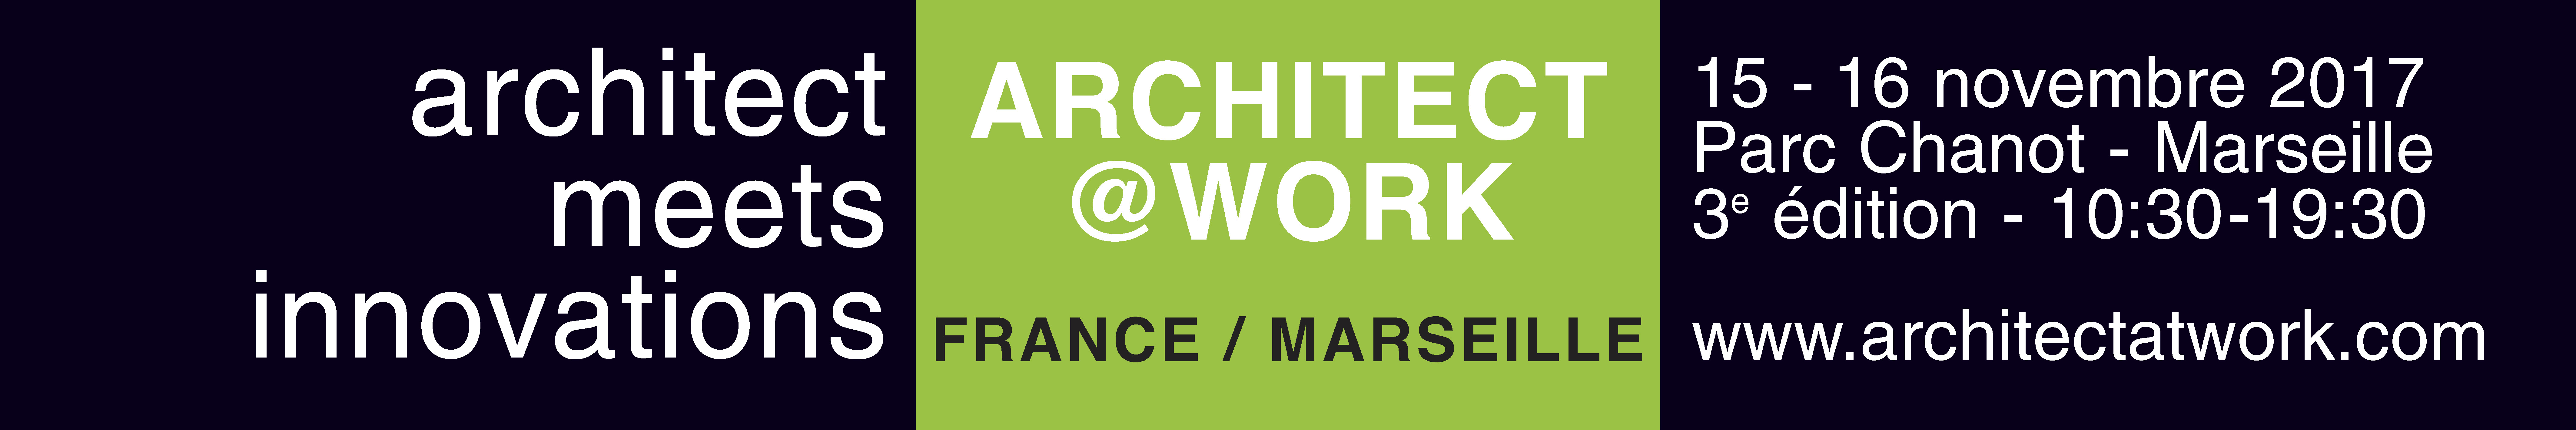 Architect@Work Marseille 2017